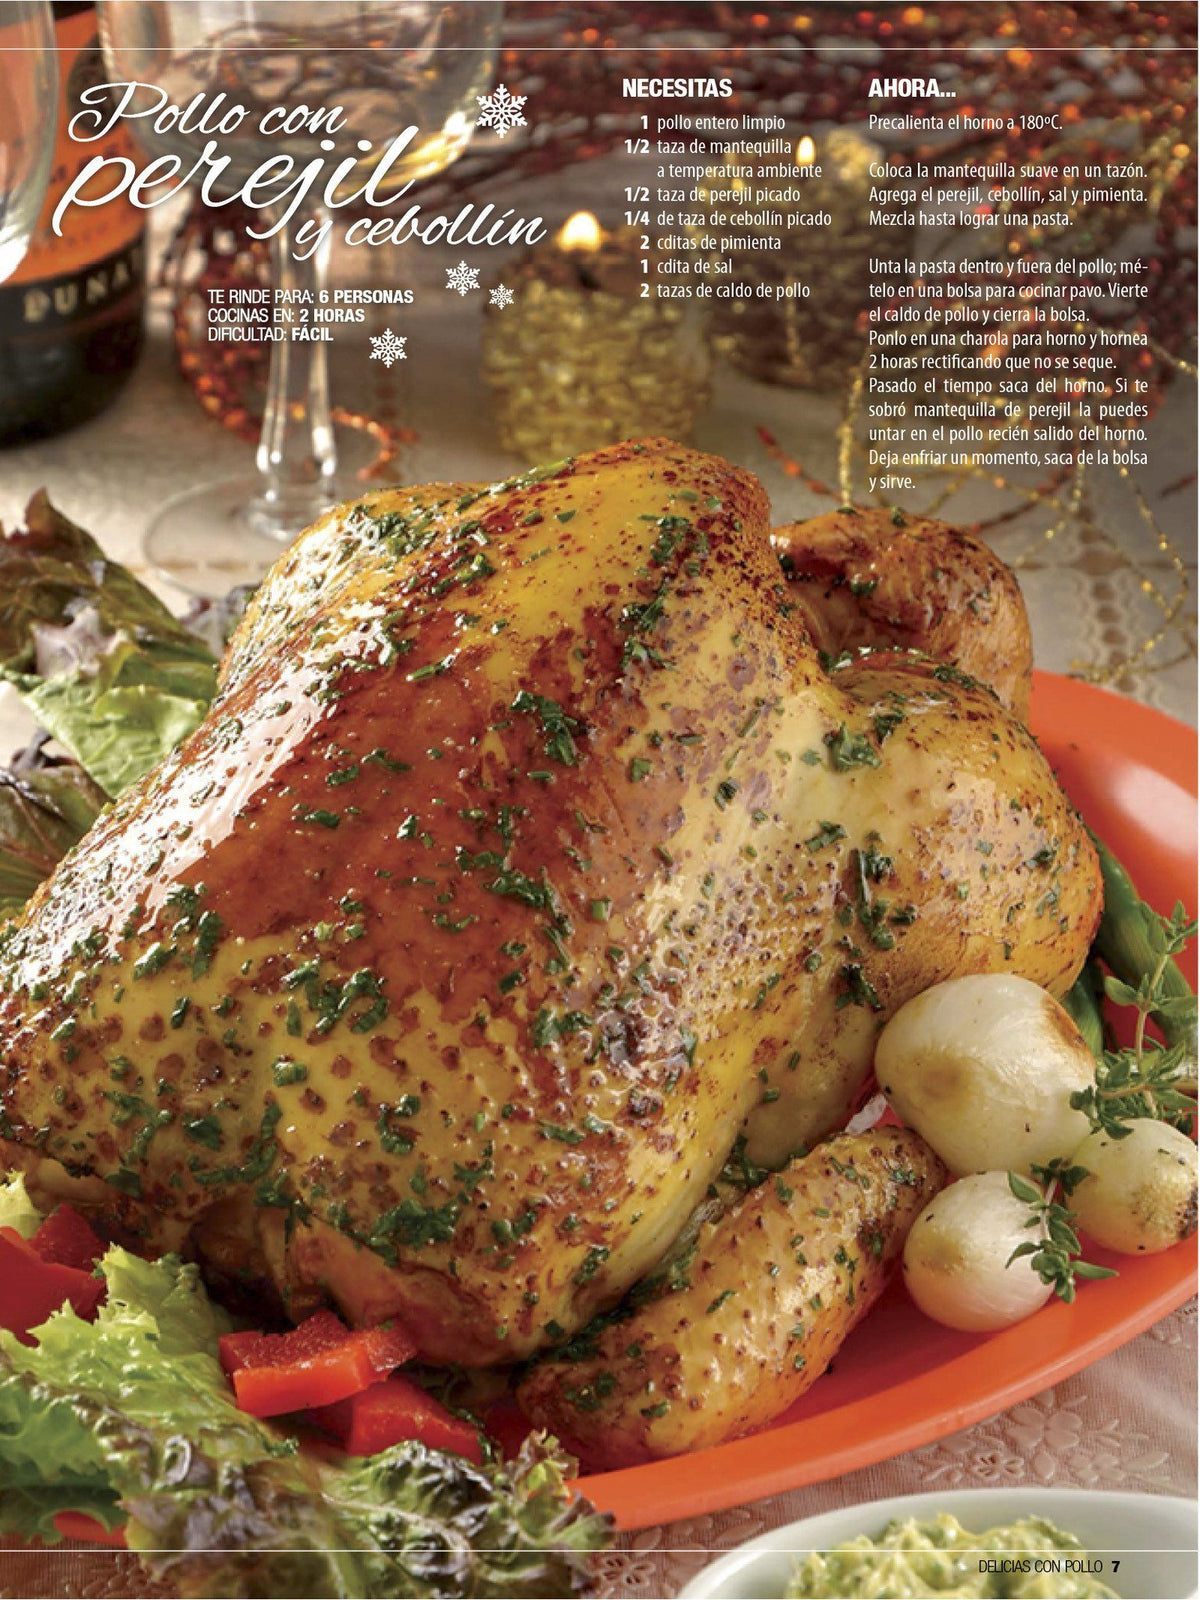 Delicias con Pollo Especial 29 - Pavos y pollos para Navidad - Formato Digital - ToukanMango